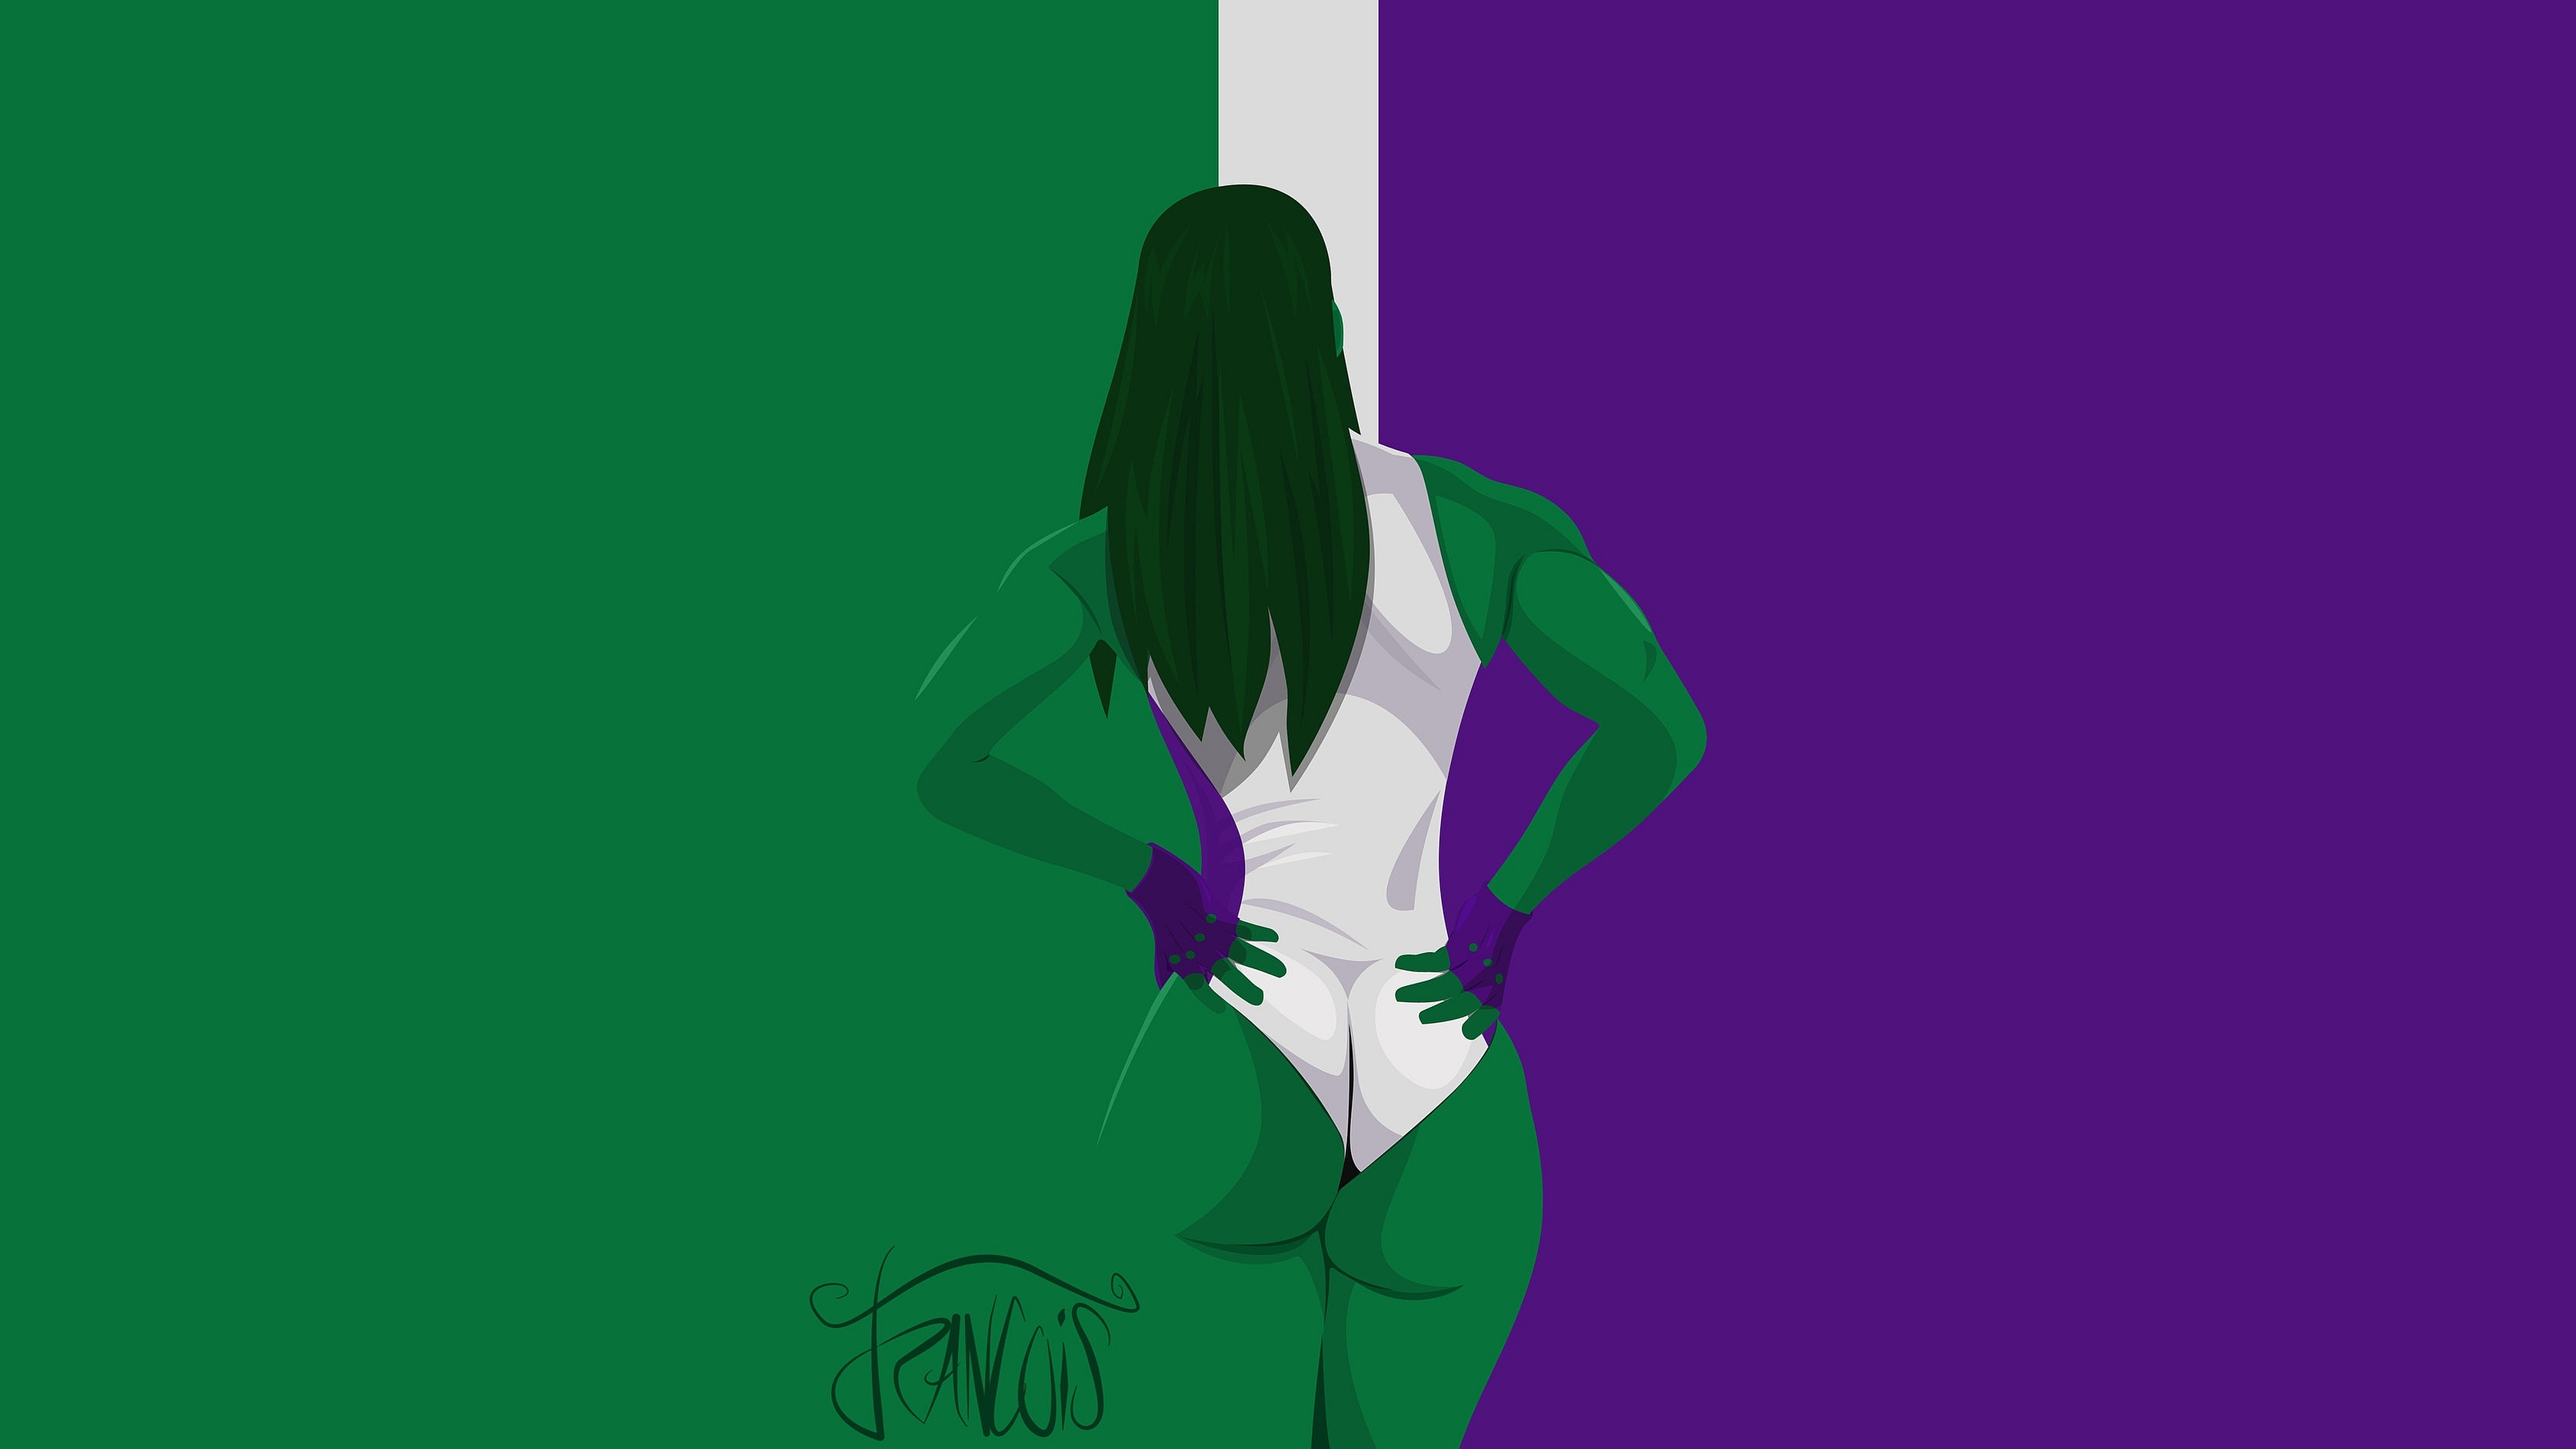 ella fondo de pantalla,verde,púrpura,violeta,animación,ilustración